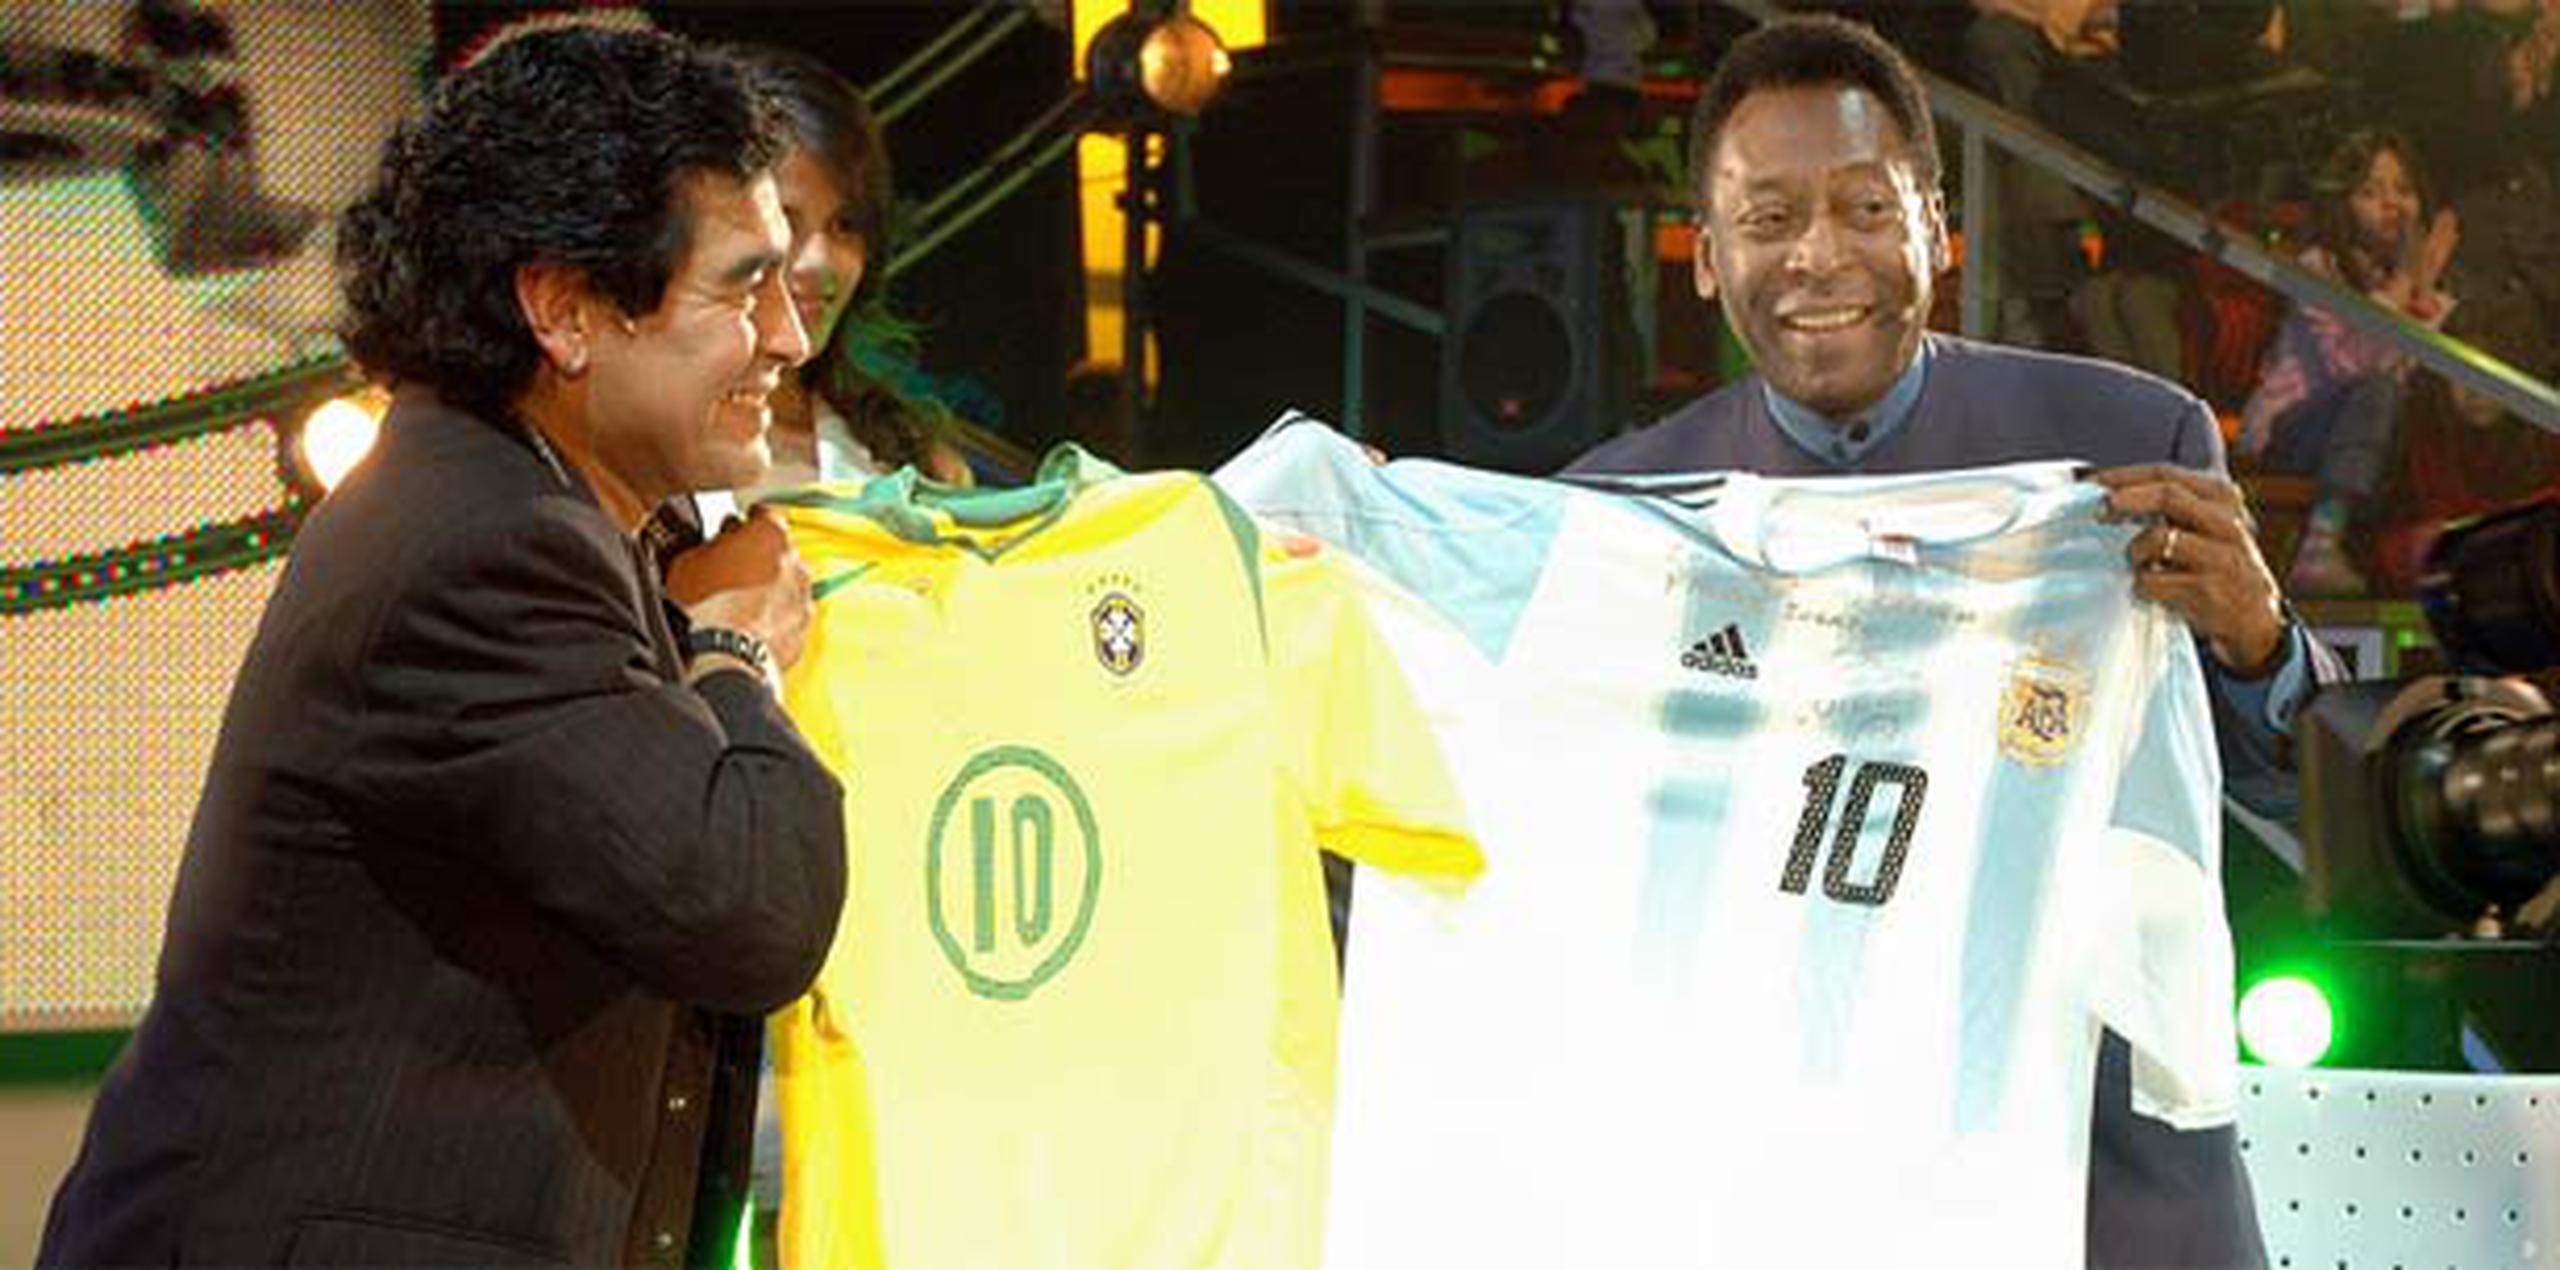 Los futbolistas Maradona y Pelé utilizaron el número 10. (Archivo)